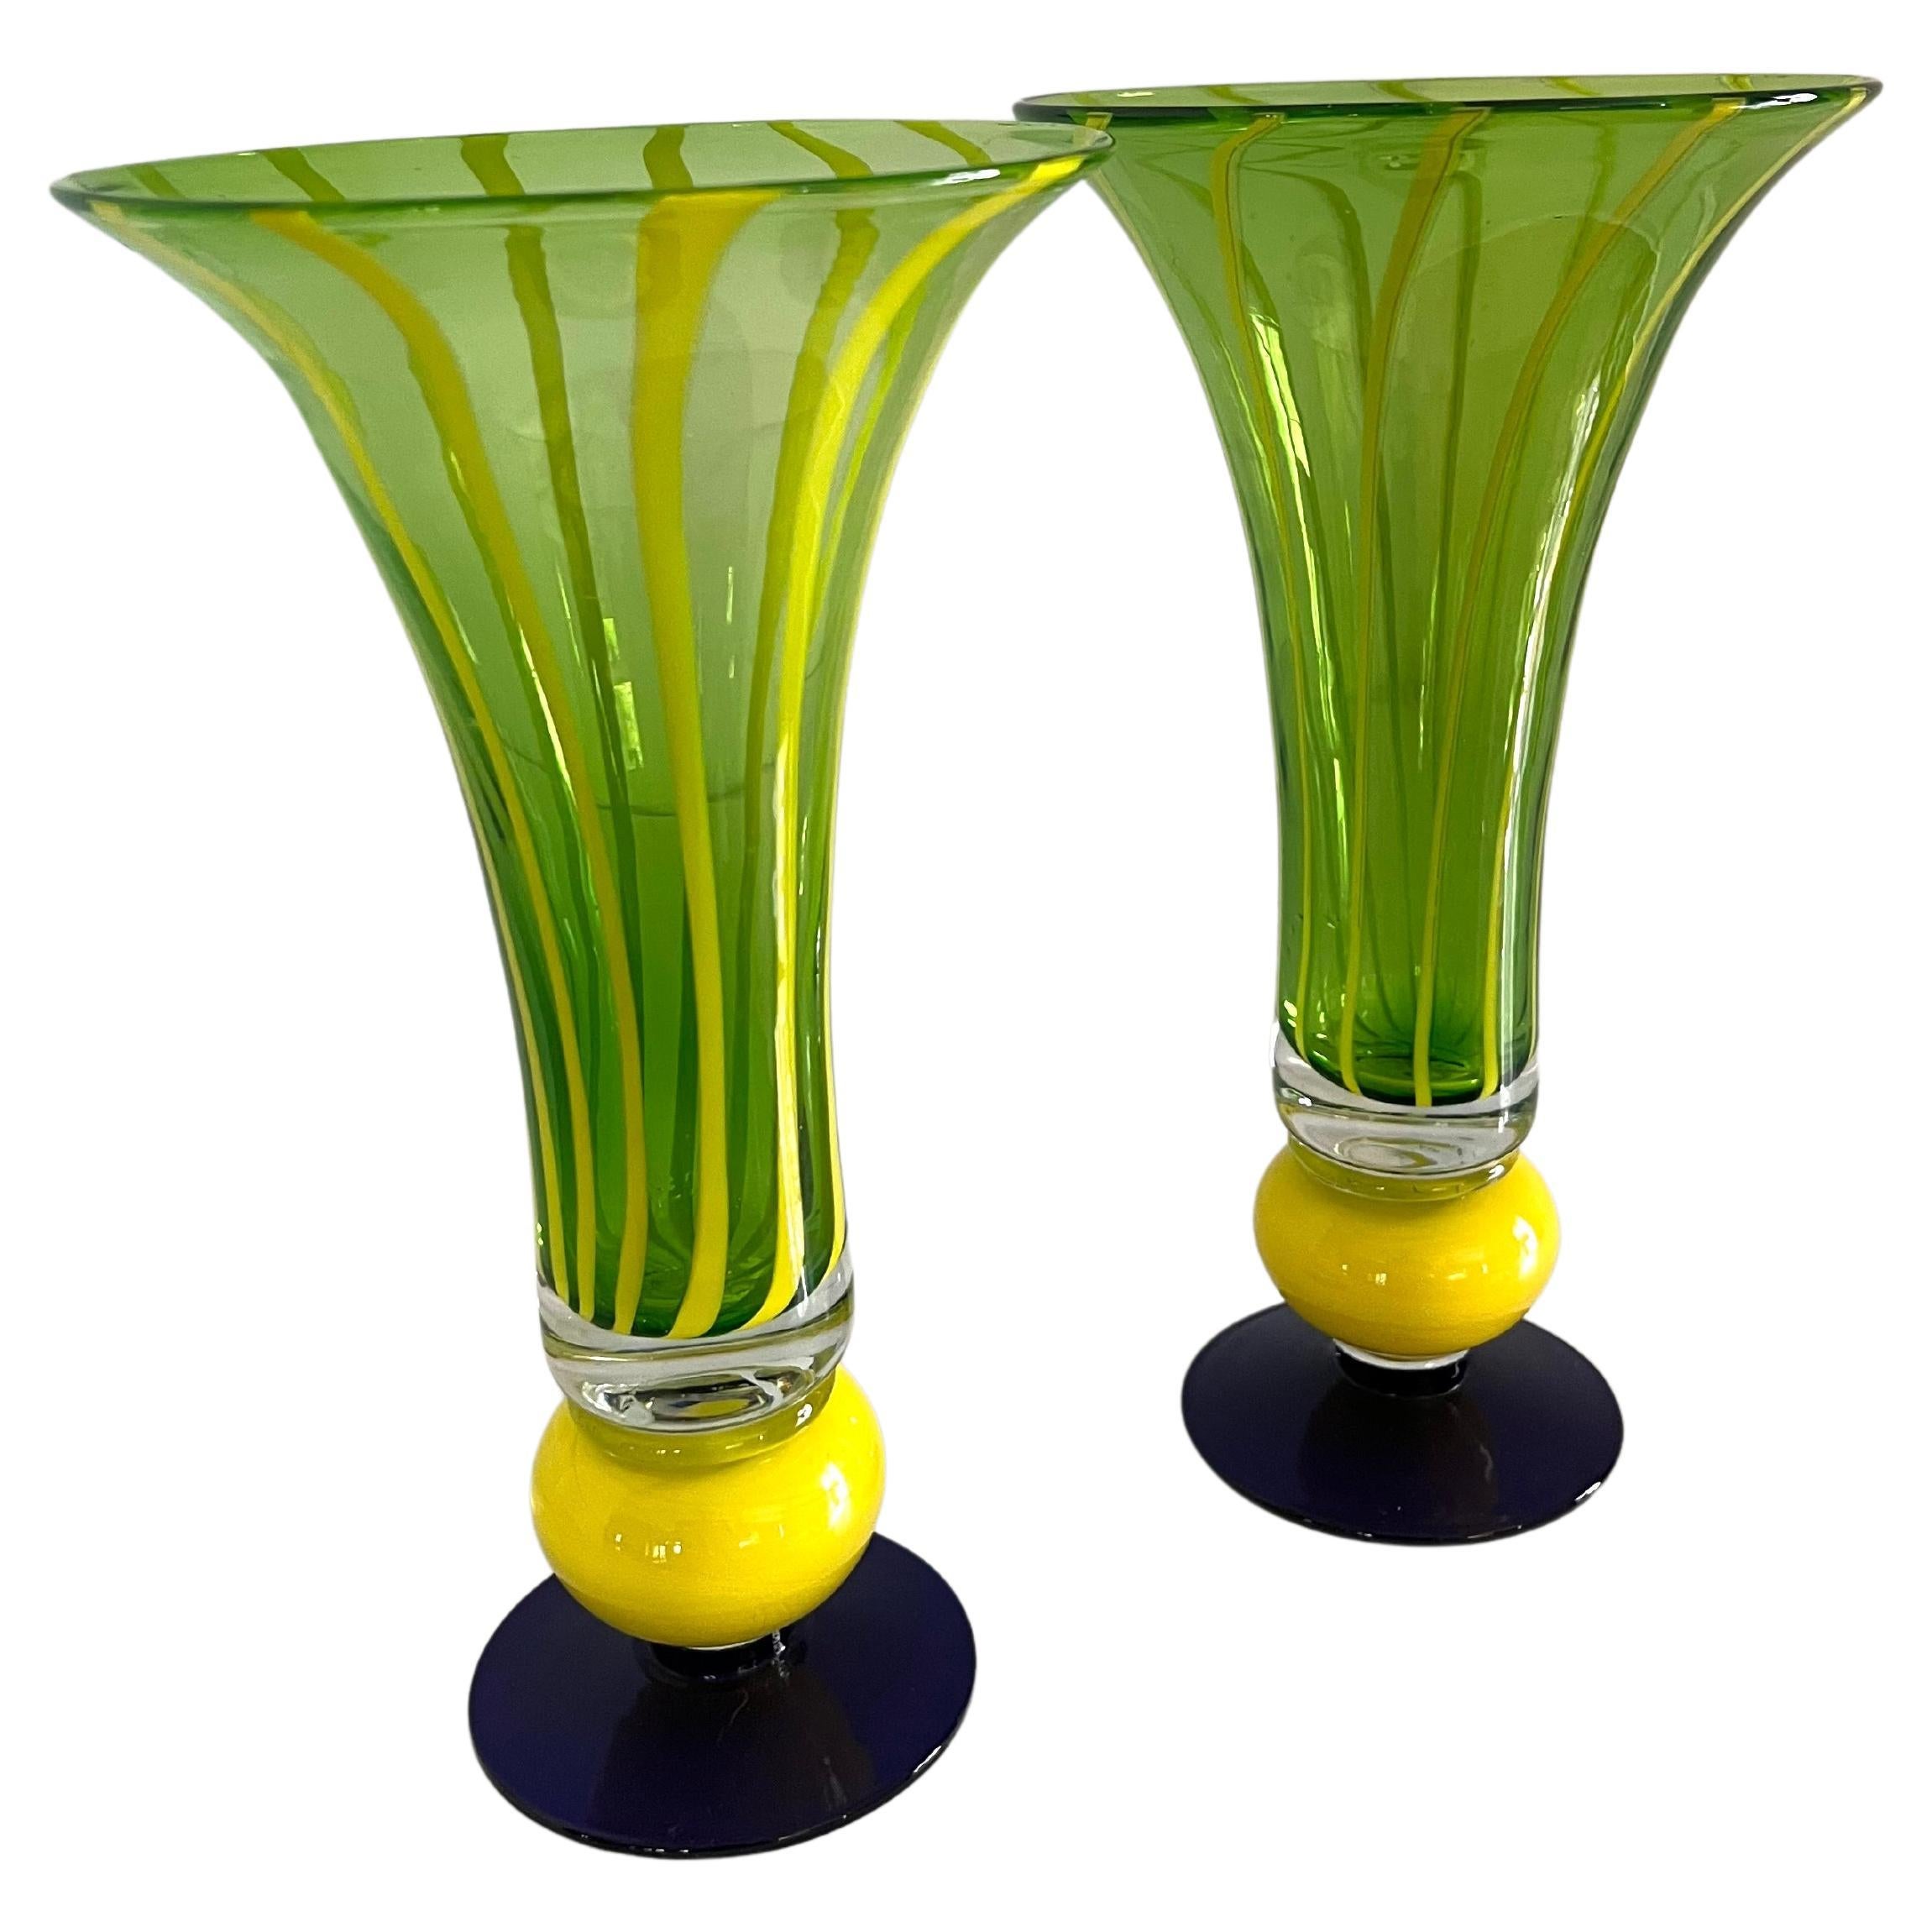 Paire de vases en verre trompette avec base bleue, détails de boules jaunes et corps rayé vert et jaune. Un complément aux salons et salles à manger, ou peut-être pour apporter une couleur supplémentaire au jardin.